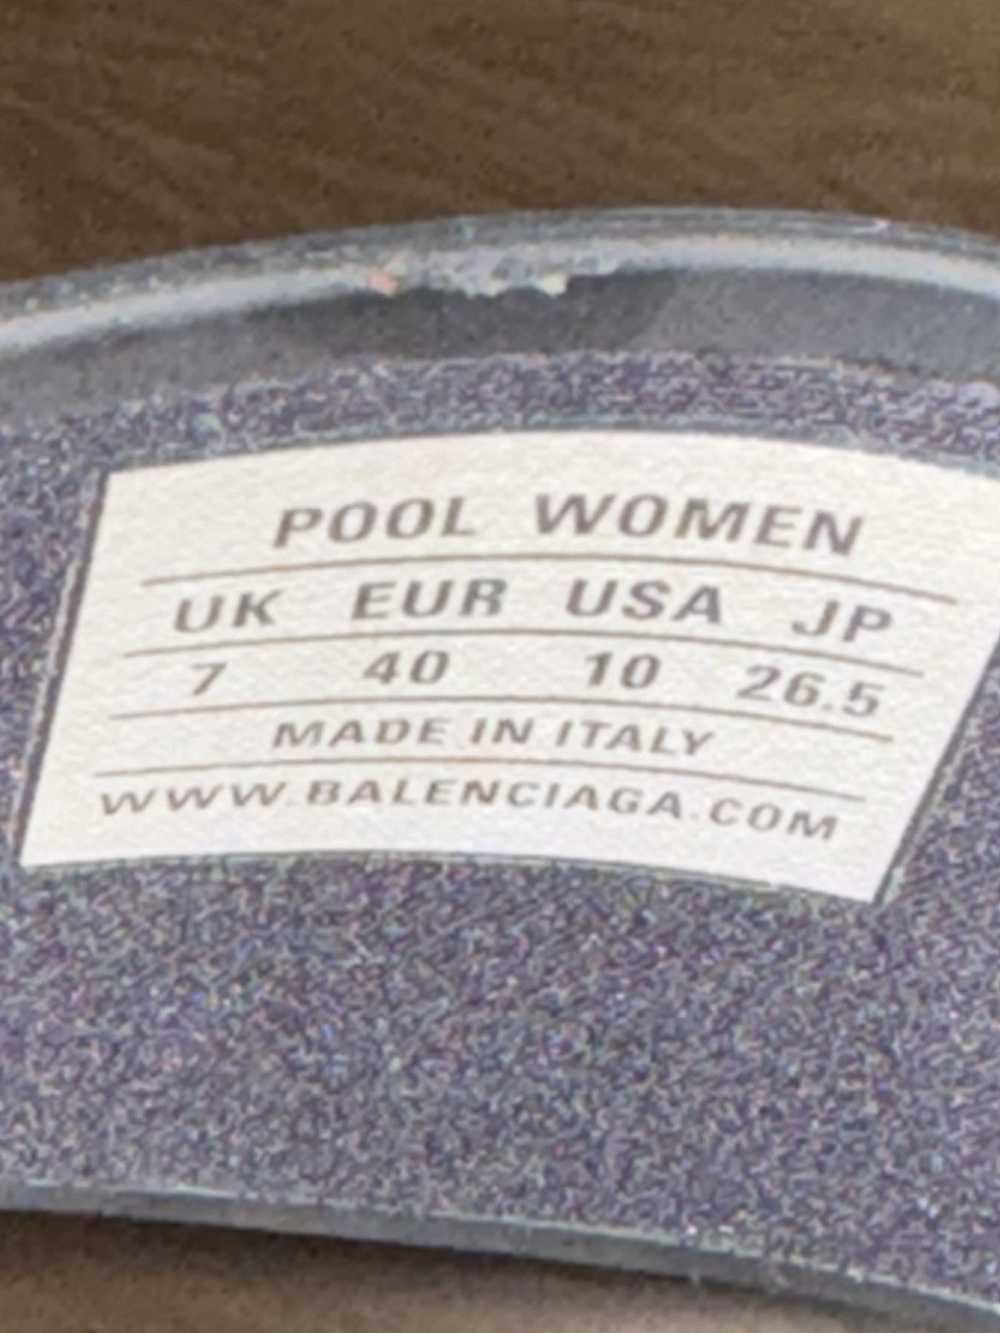 Balenciaga Balenciaga New York pool slides - image 3